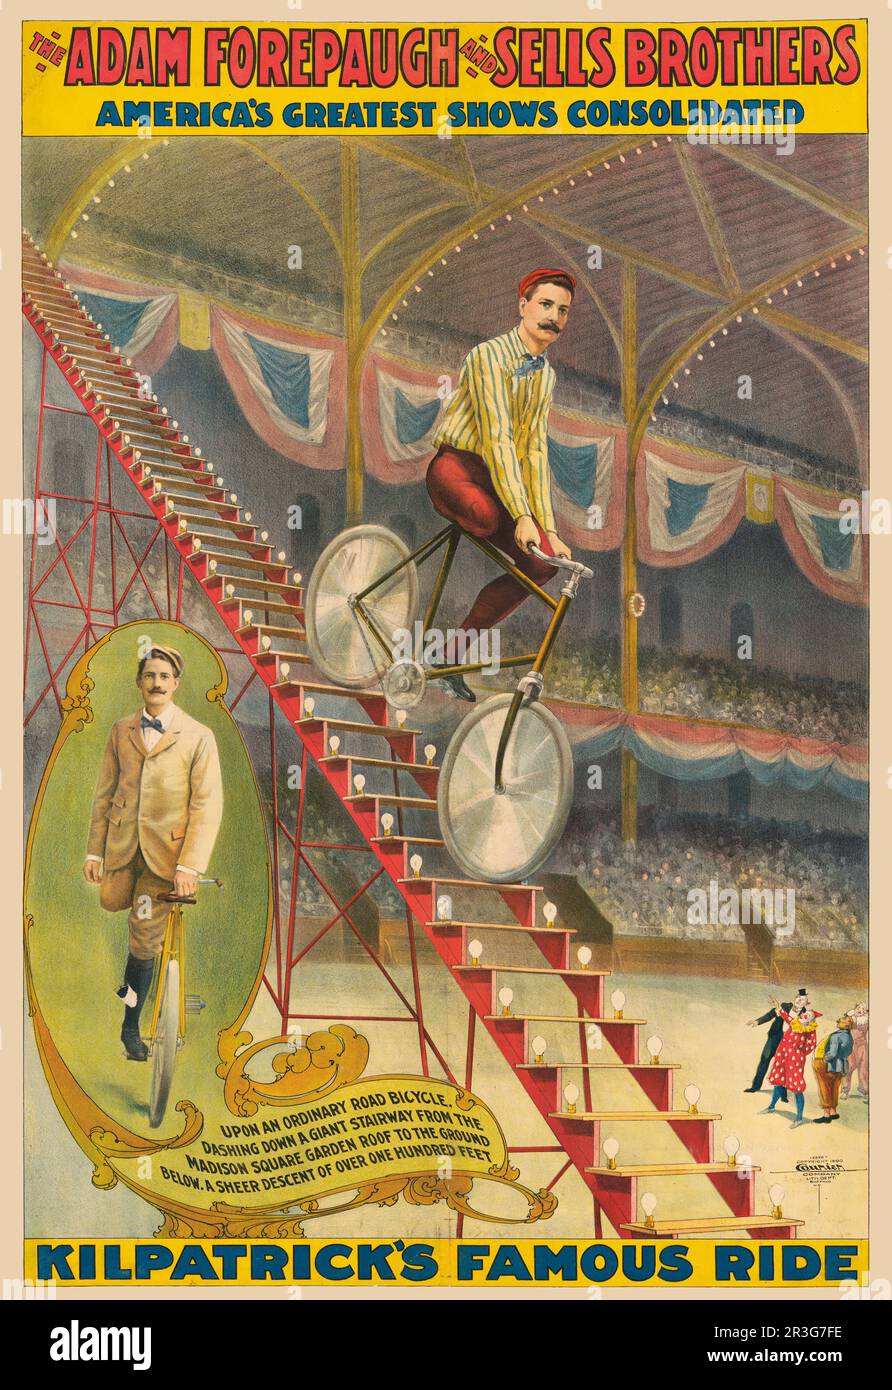 Vintage Adam Forepaugh e vende il poster del circo dei Fratelli che mostra l'amputée scendendo la scala in bicicletta. Foto Stock